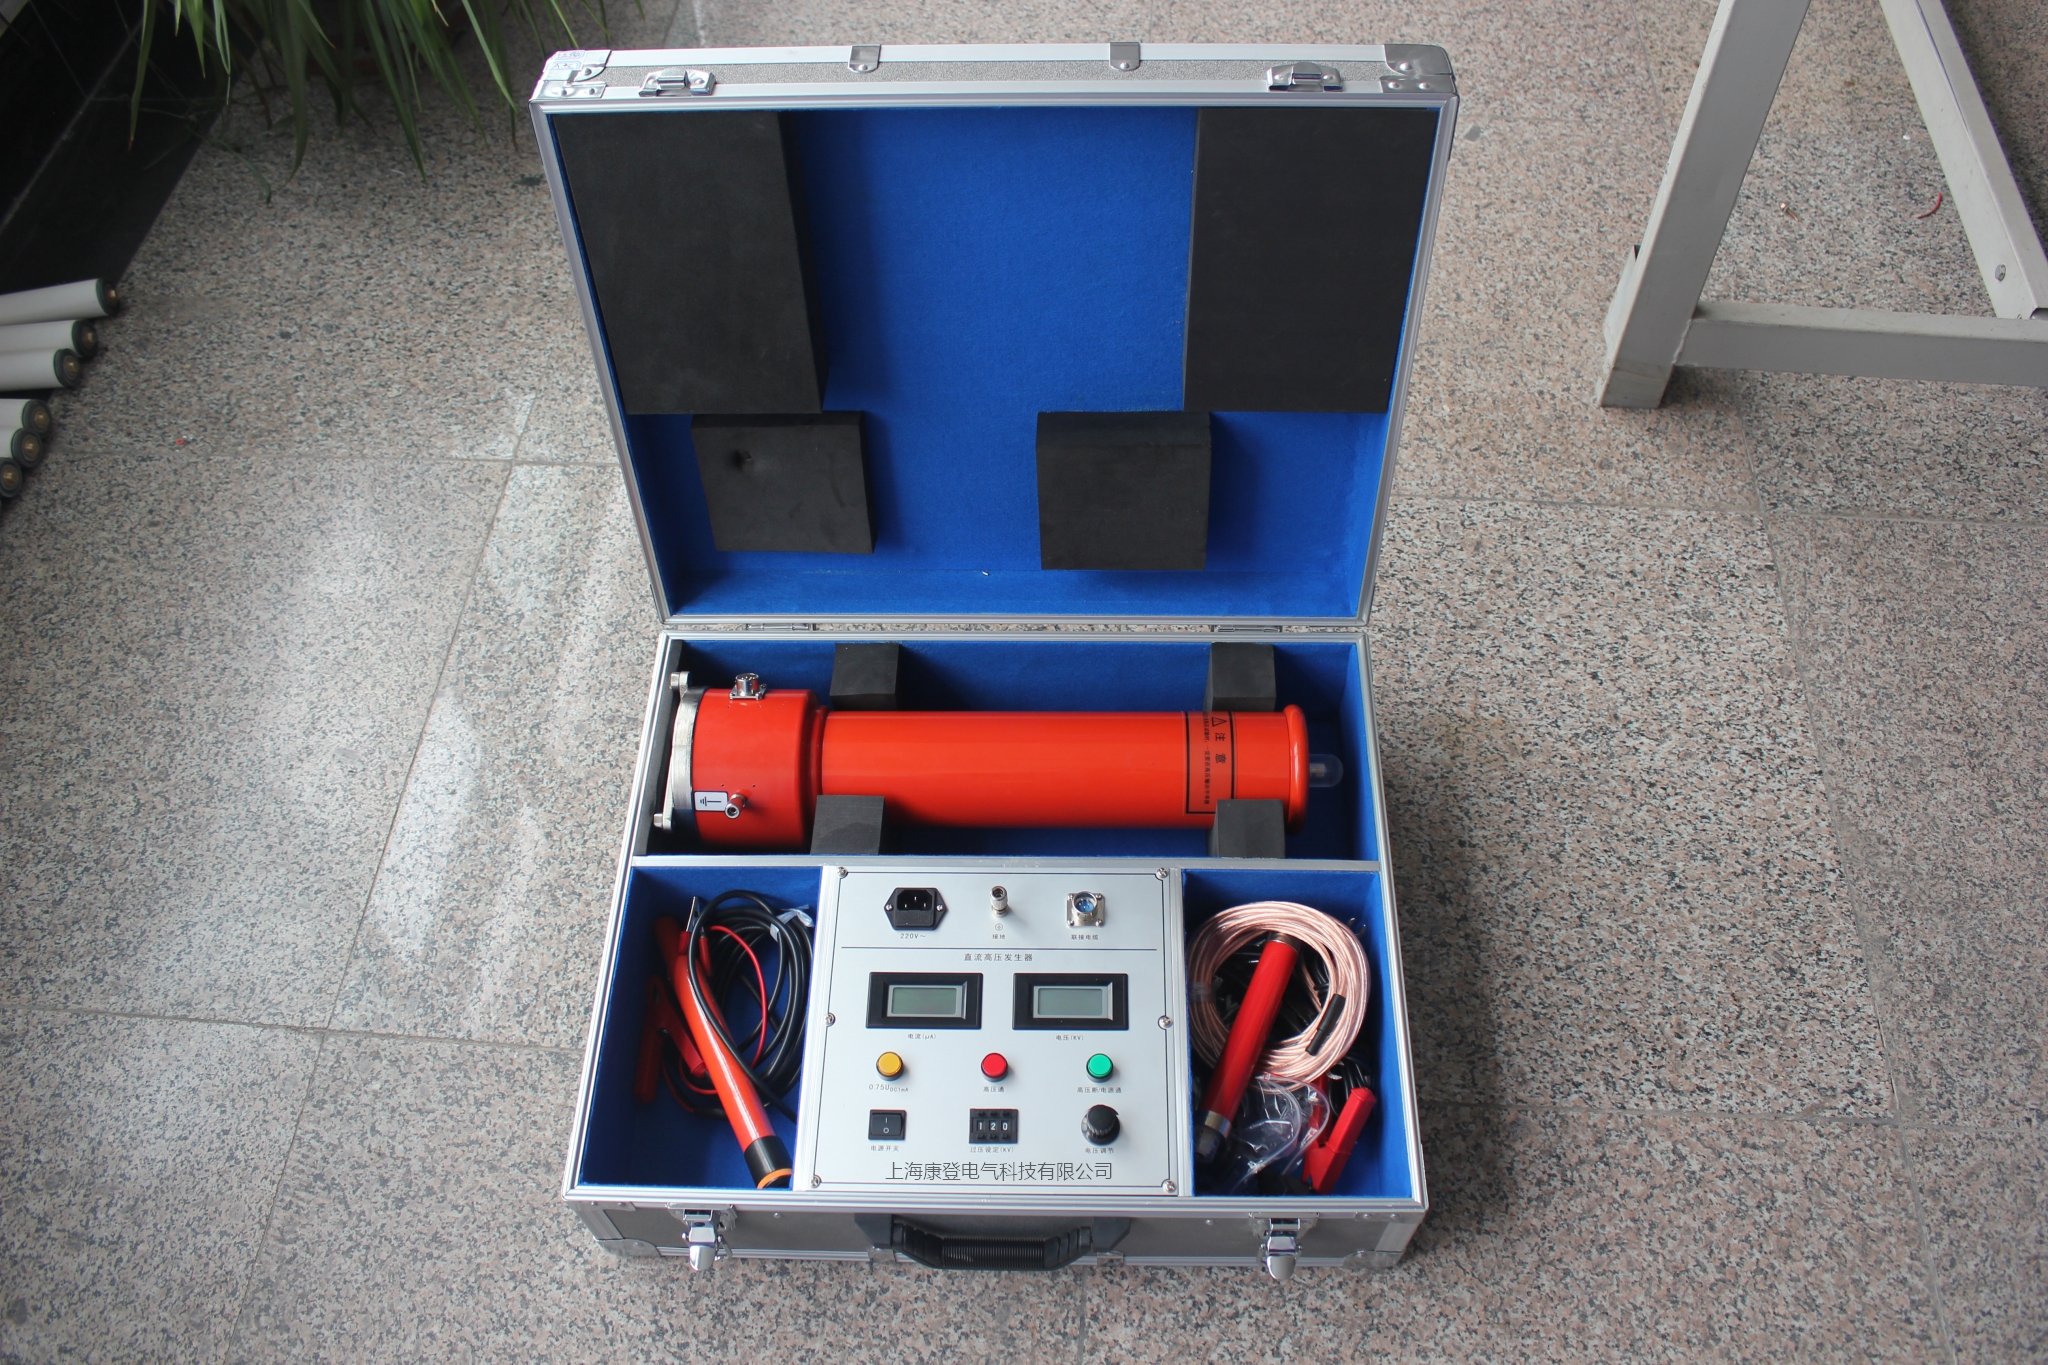 ZGF-60KV直流高压发生器 直流高压发生器,高频直流高压发生器,高压发生器,高压直流发生器